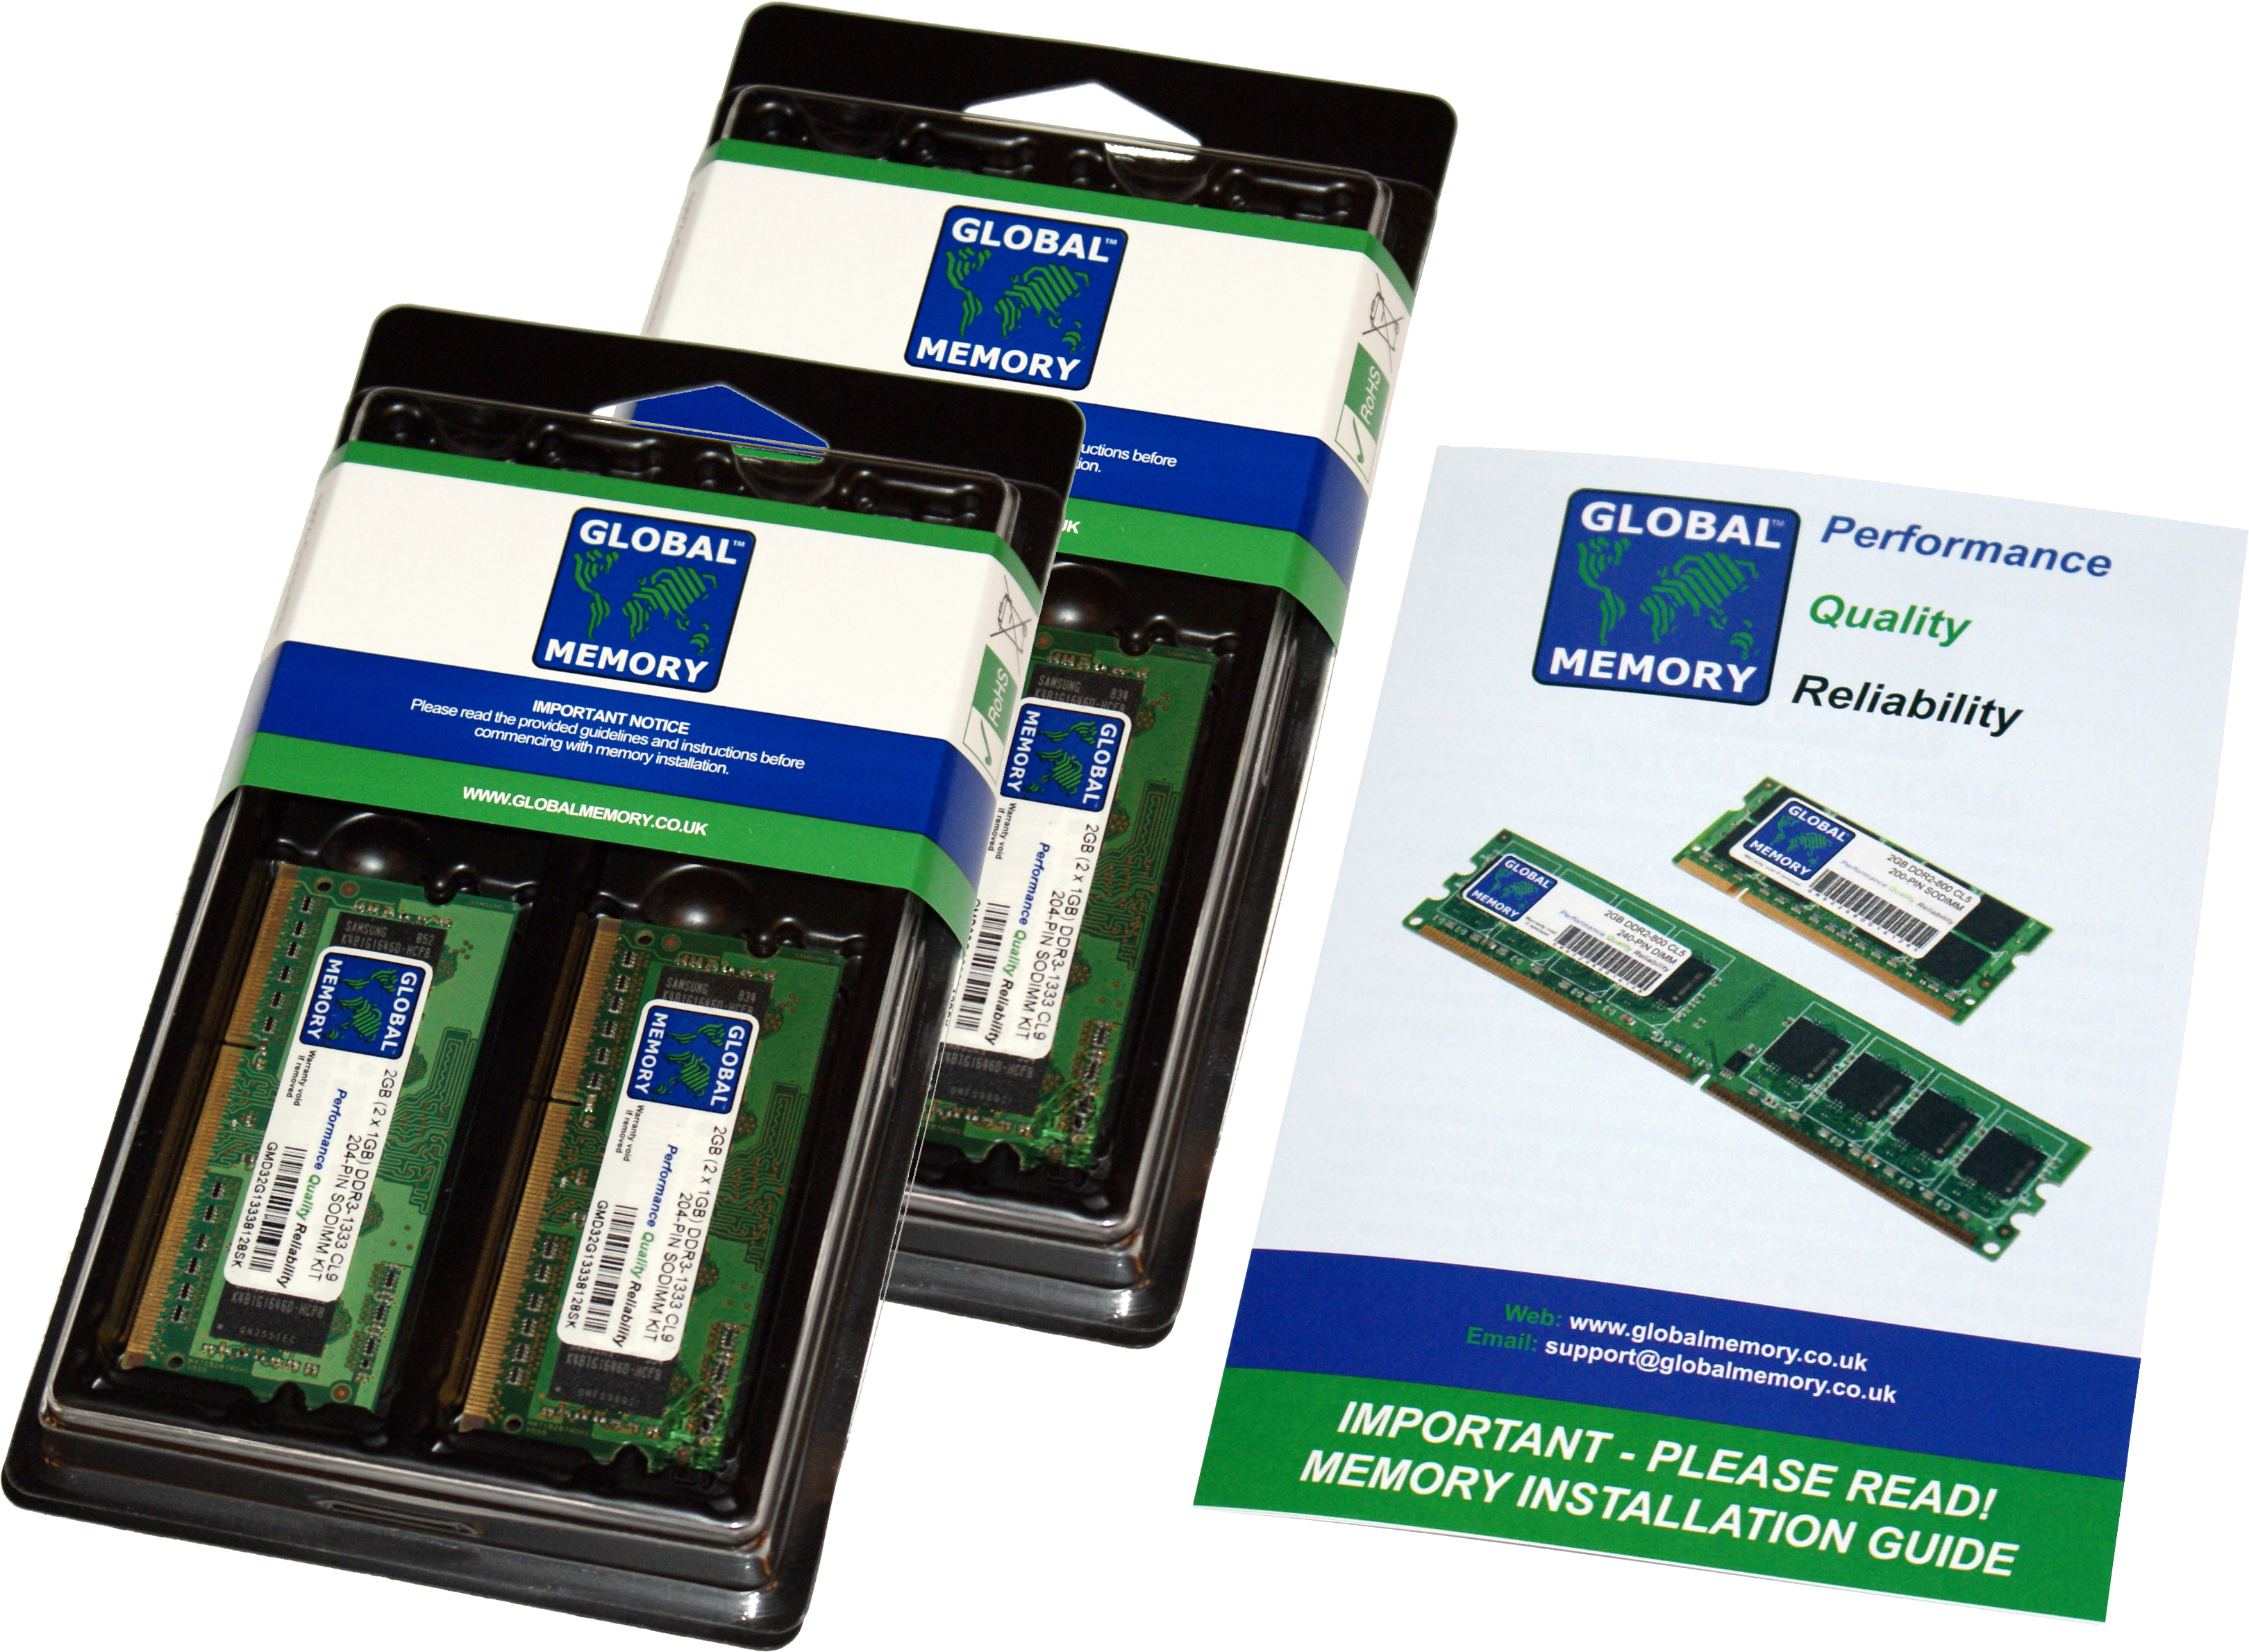 16GB (4 x 4GB) DDR4 2400MHz PC4-19200 260-PIN SODIMM MEMORY RAM KIT FOR FUJITSU LAPTOPS/NOTEBOOKS